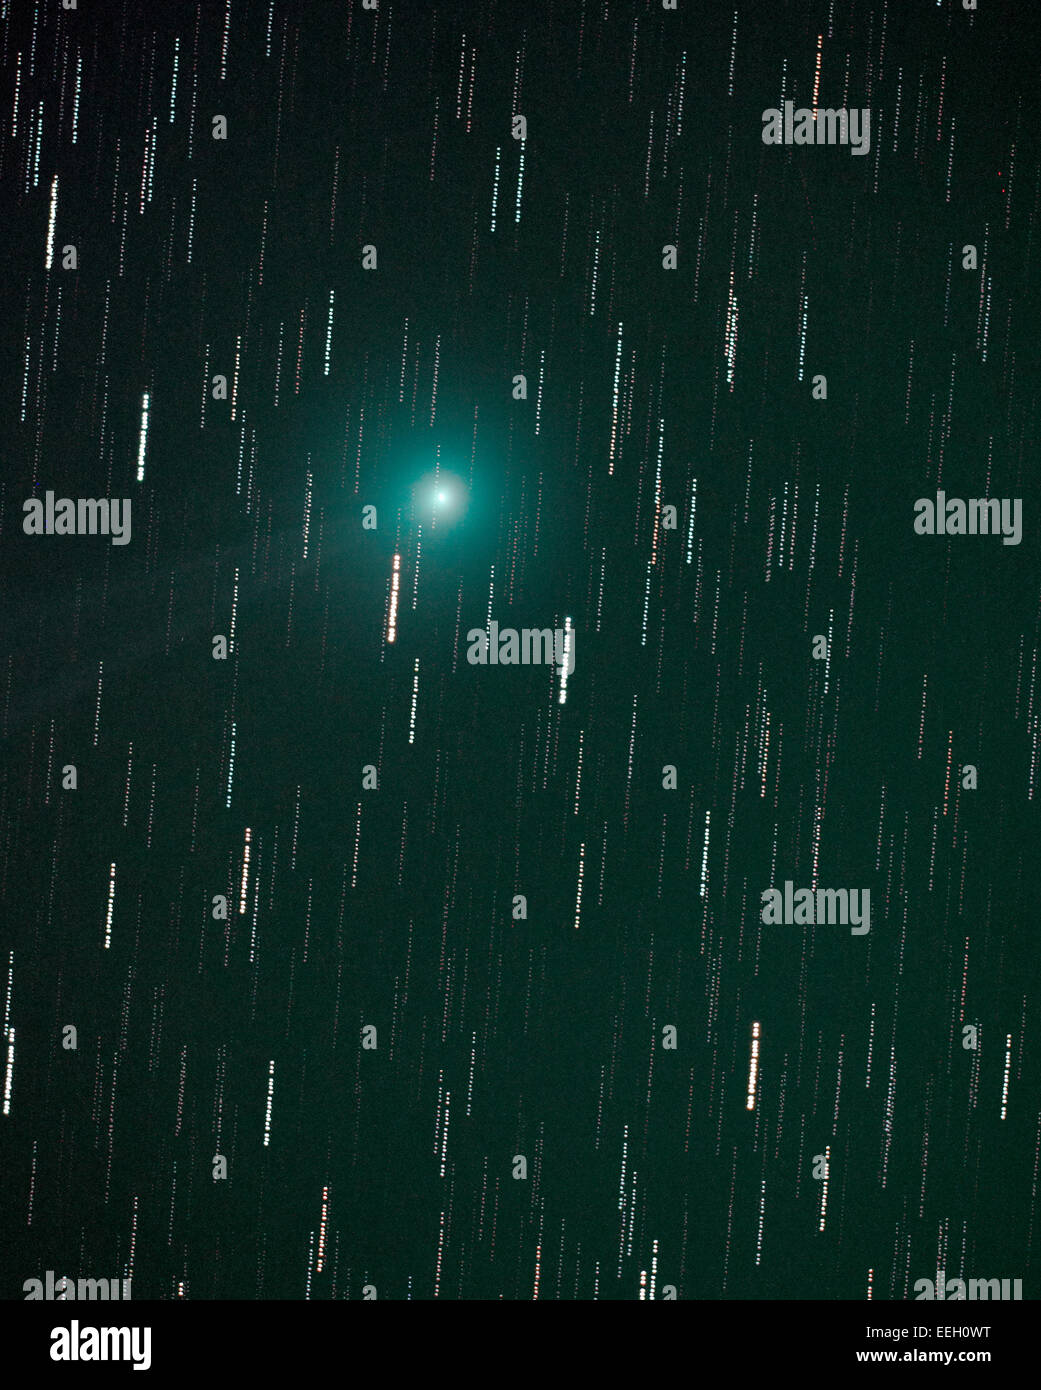 SW LONDRA, REGNO UNITO. 18 gennaio, 2015. Comet Lovejoy flussi di nucleo fuori una tenue luce di coda tra le stelle della costellazione del Toro in questa lunga esposizione dell'immagine. Credito: Malcolm Park editoriale/Alamy Live News. Foto Stock